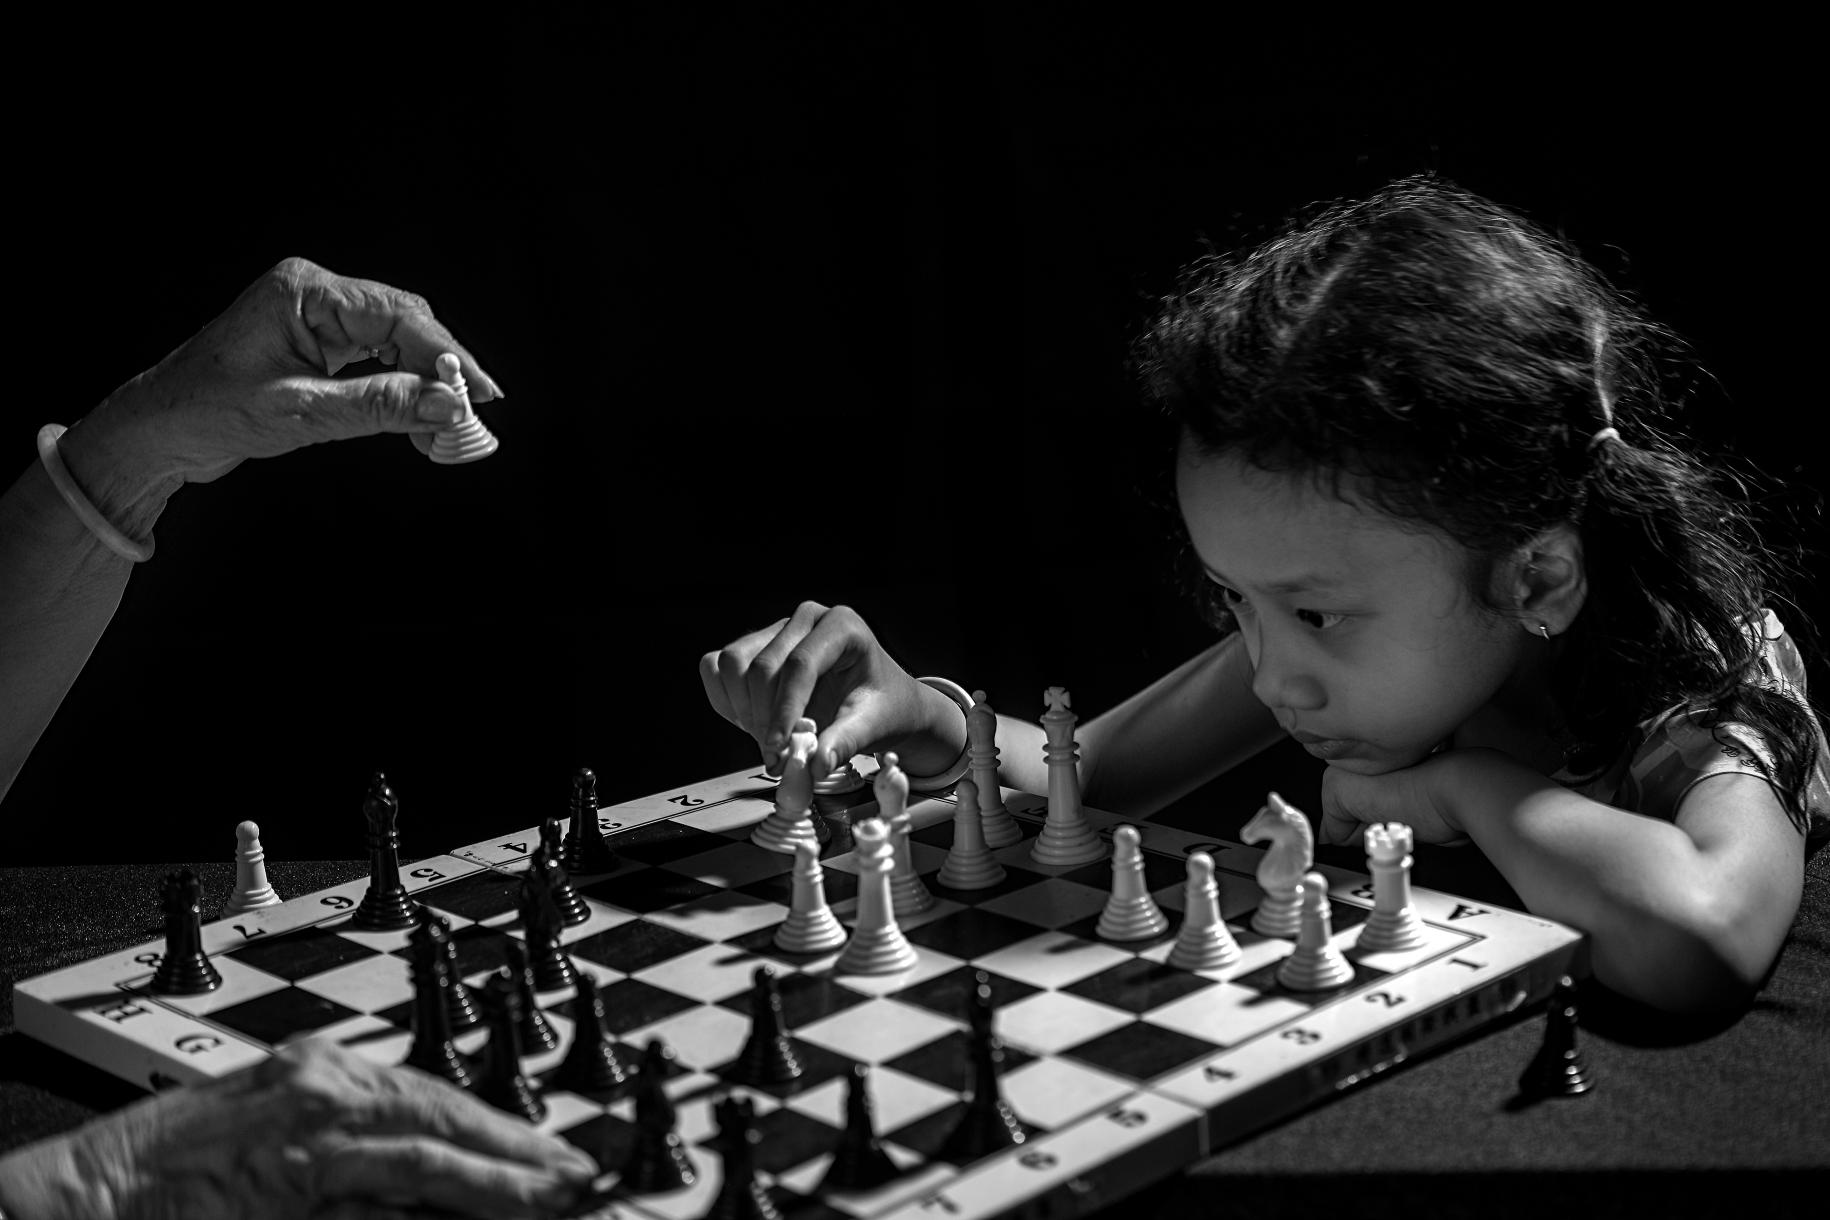 صورة بالأبيض والأسود لفتاة صغيرة تفكر بخطوتها التالية في لعبة الشطرنج مع جدتها.